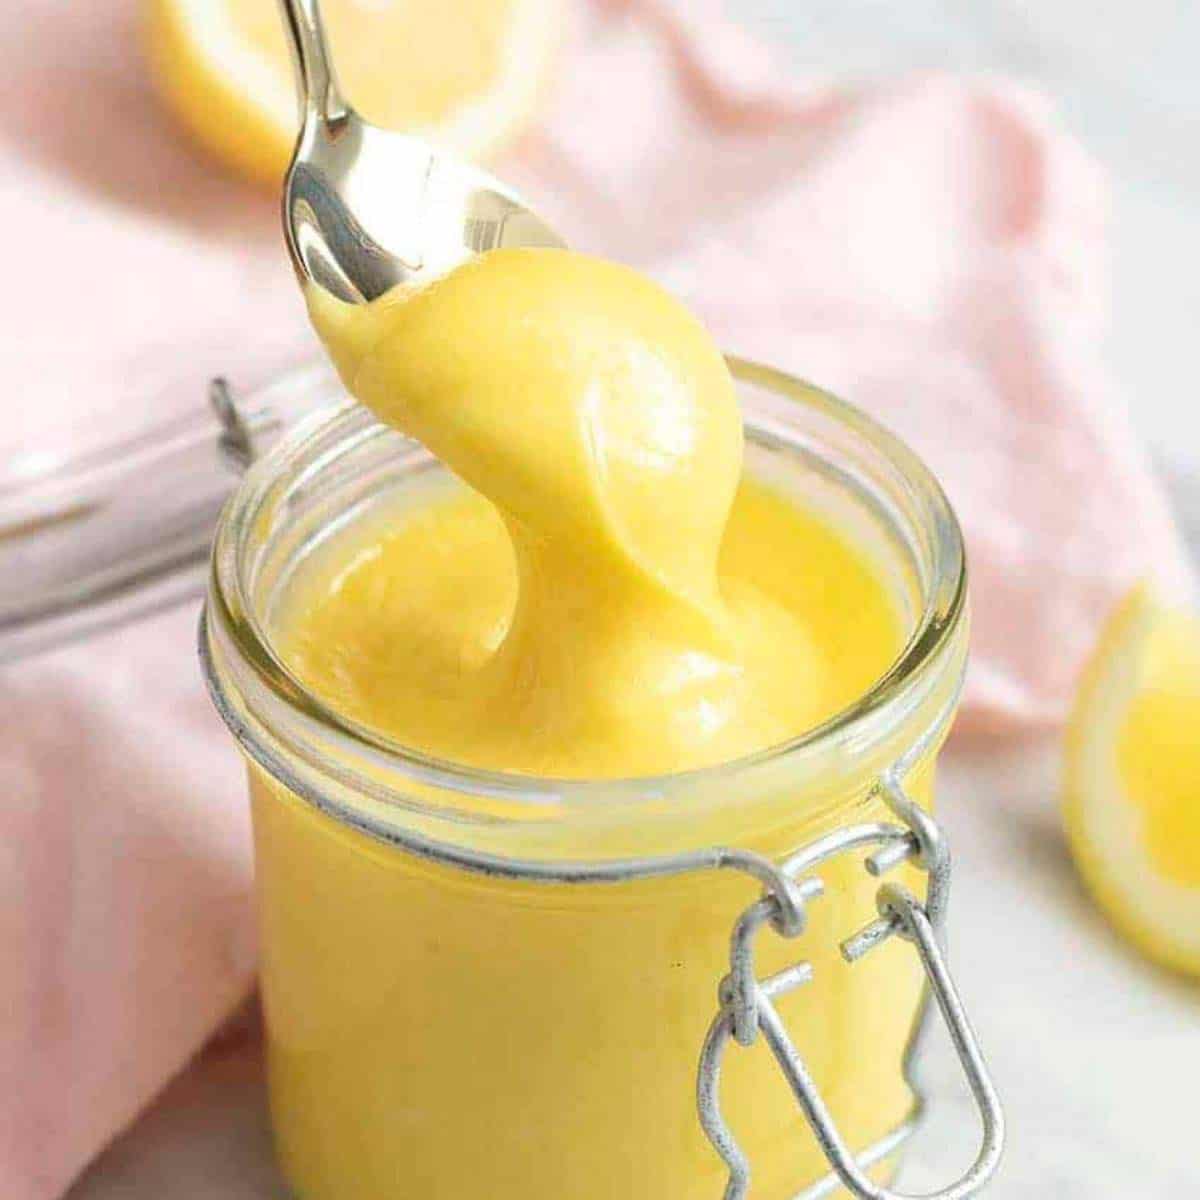 How to Make Homemade Lemon Curd